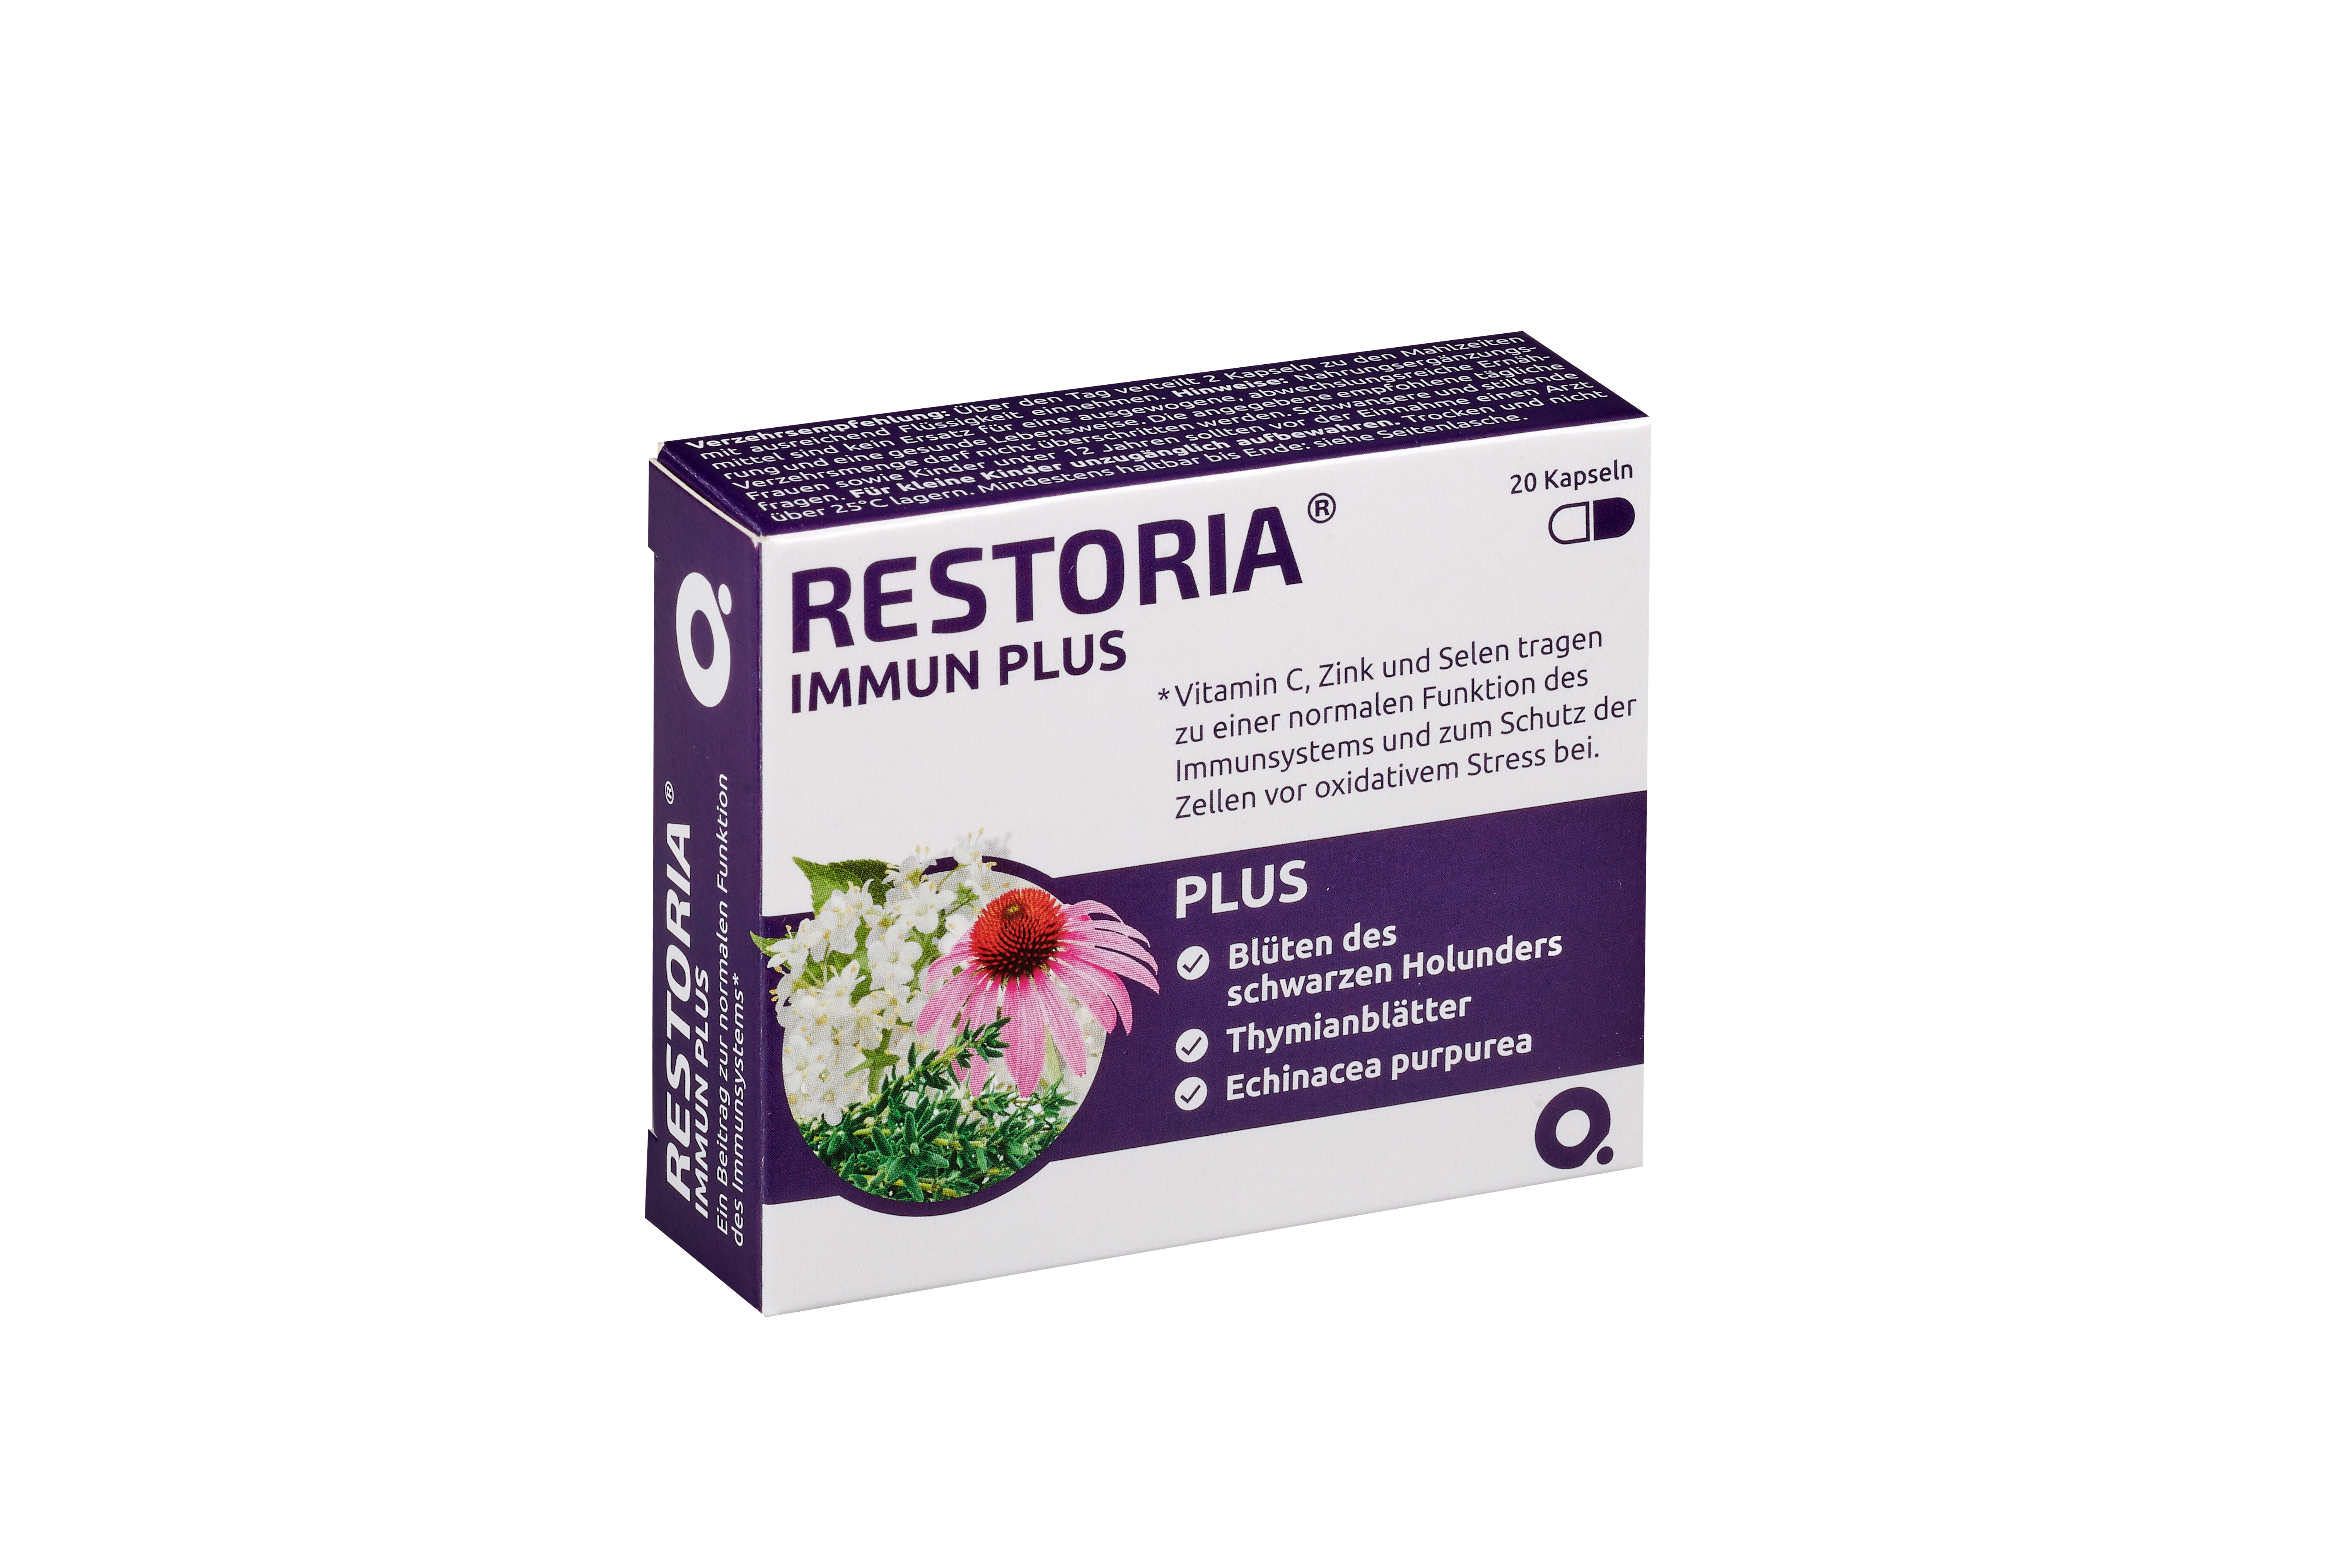 Restoria Immun Plus